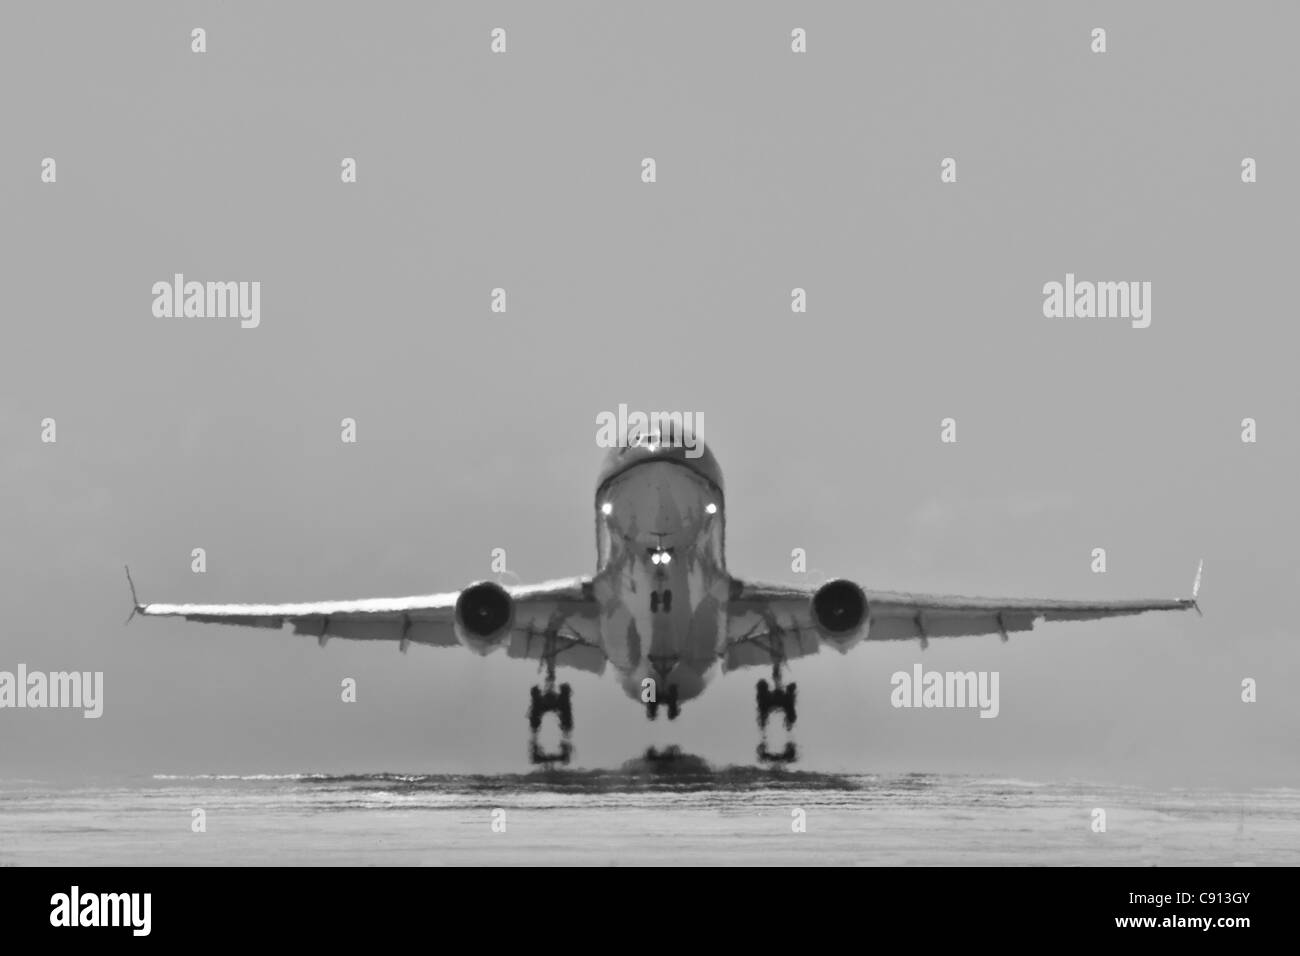 L'île de Bonaire, Antilles néerlandaises, Kralendijk, KLM Douglas DC-10, l'avion décollant de l'aéroport de Flamingo. Noir et blanc. Banque D'Images